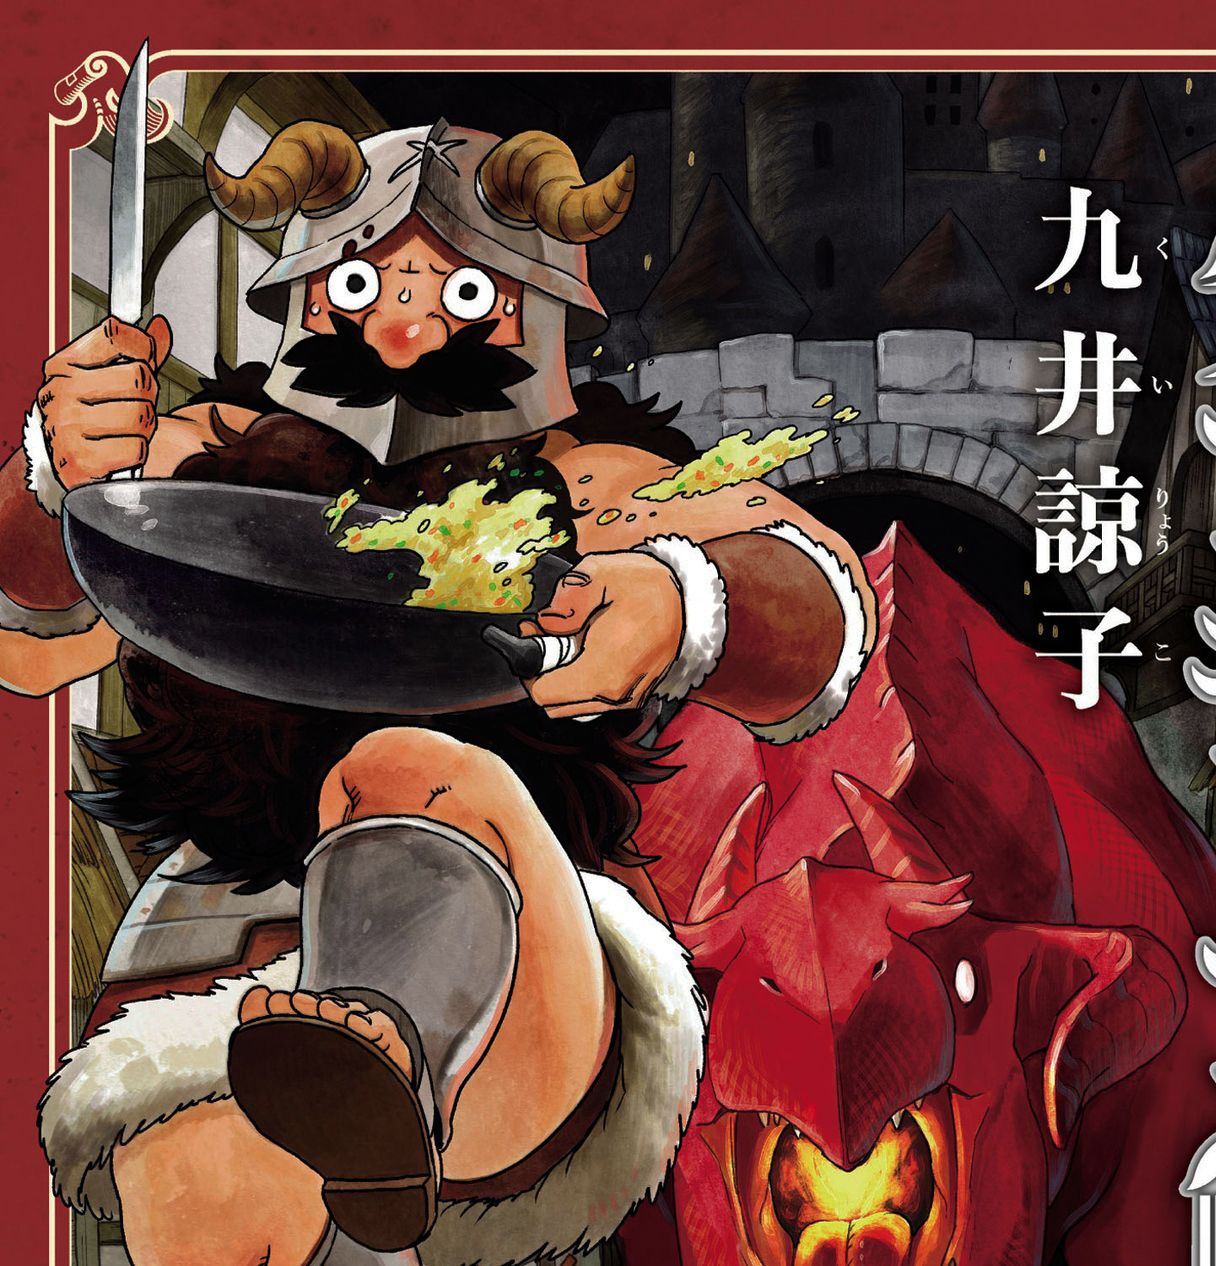 Монстры-деликатесы: кулинарные изыски героев манги «Подземелье вкусностей»